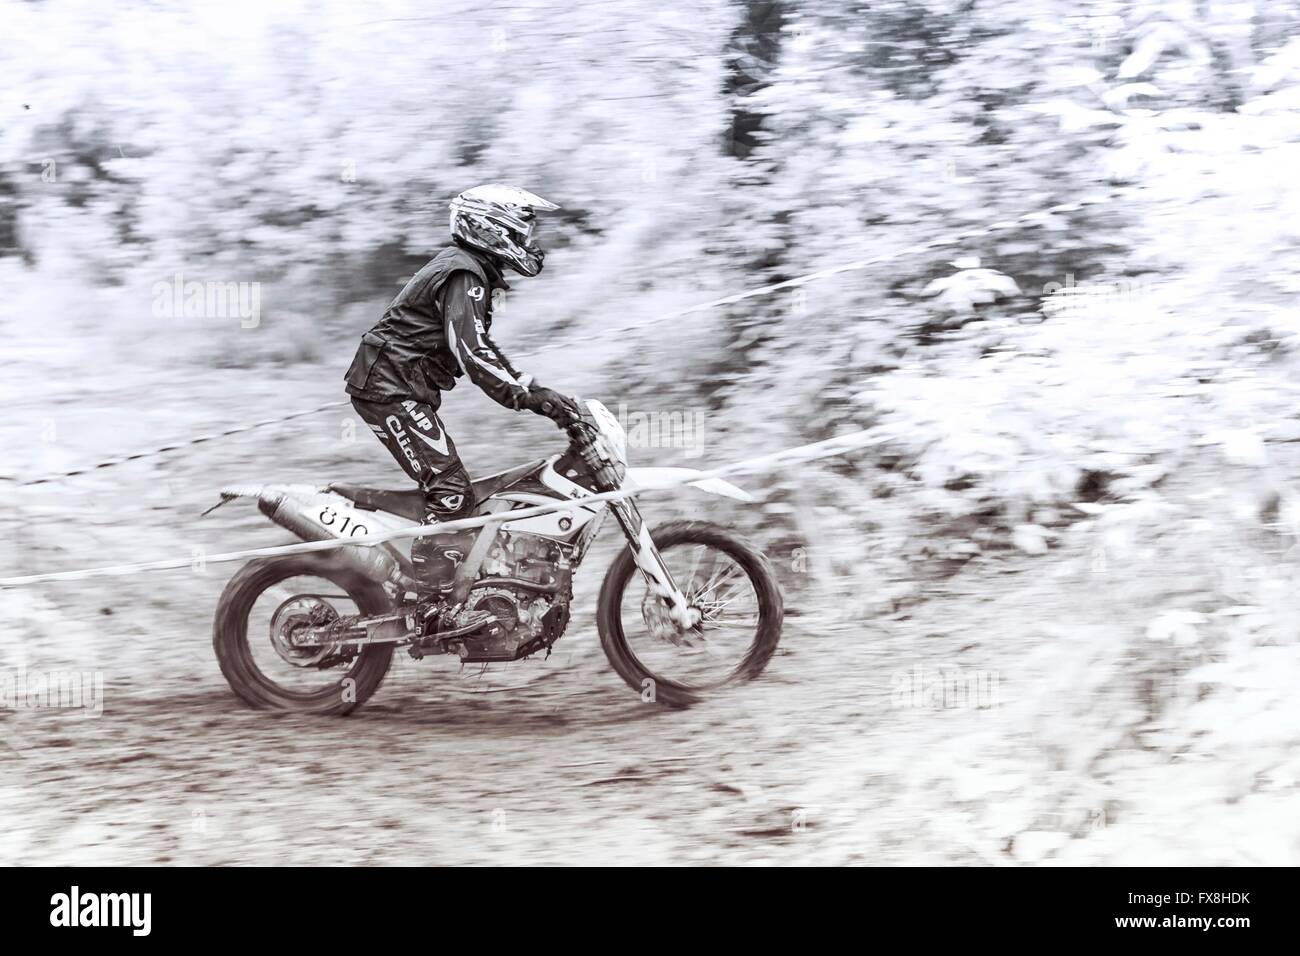 Enduro motobiker in mud Stock Photo